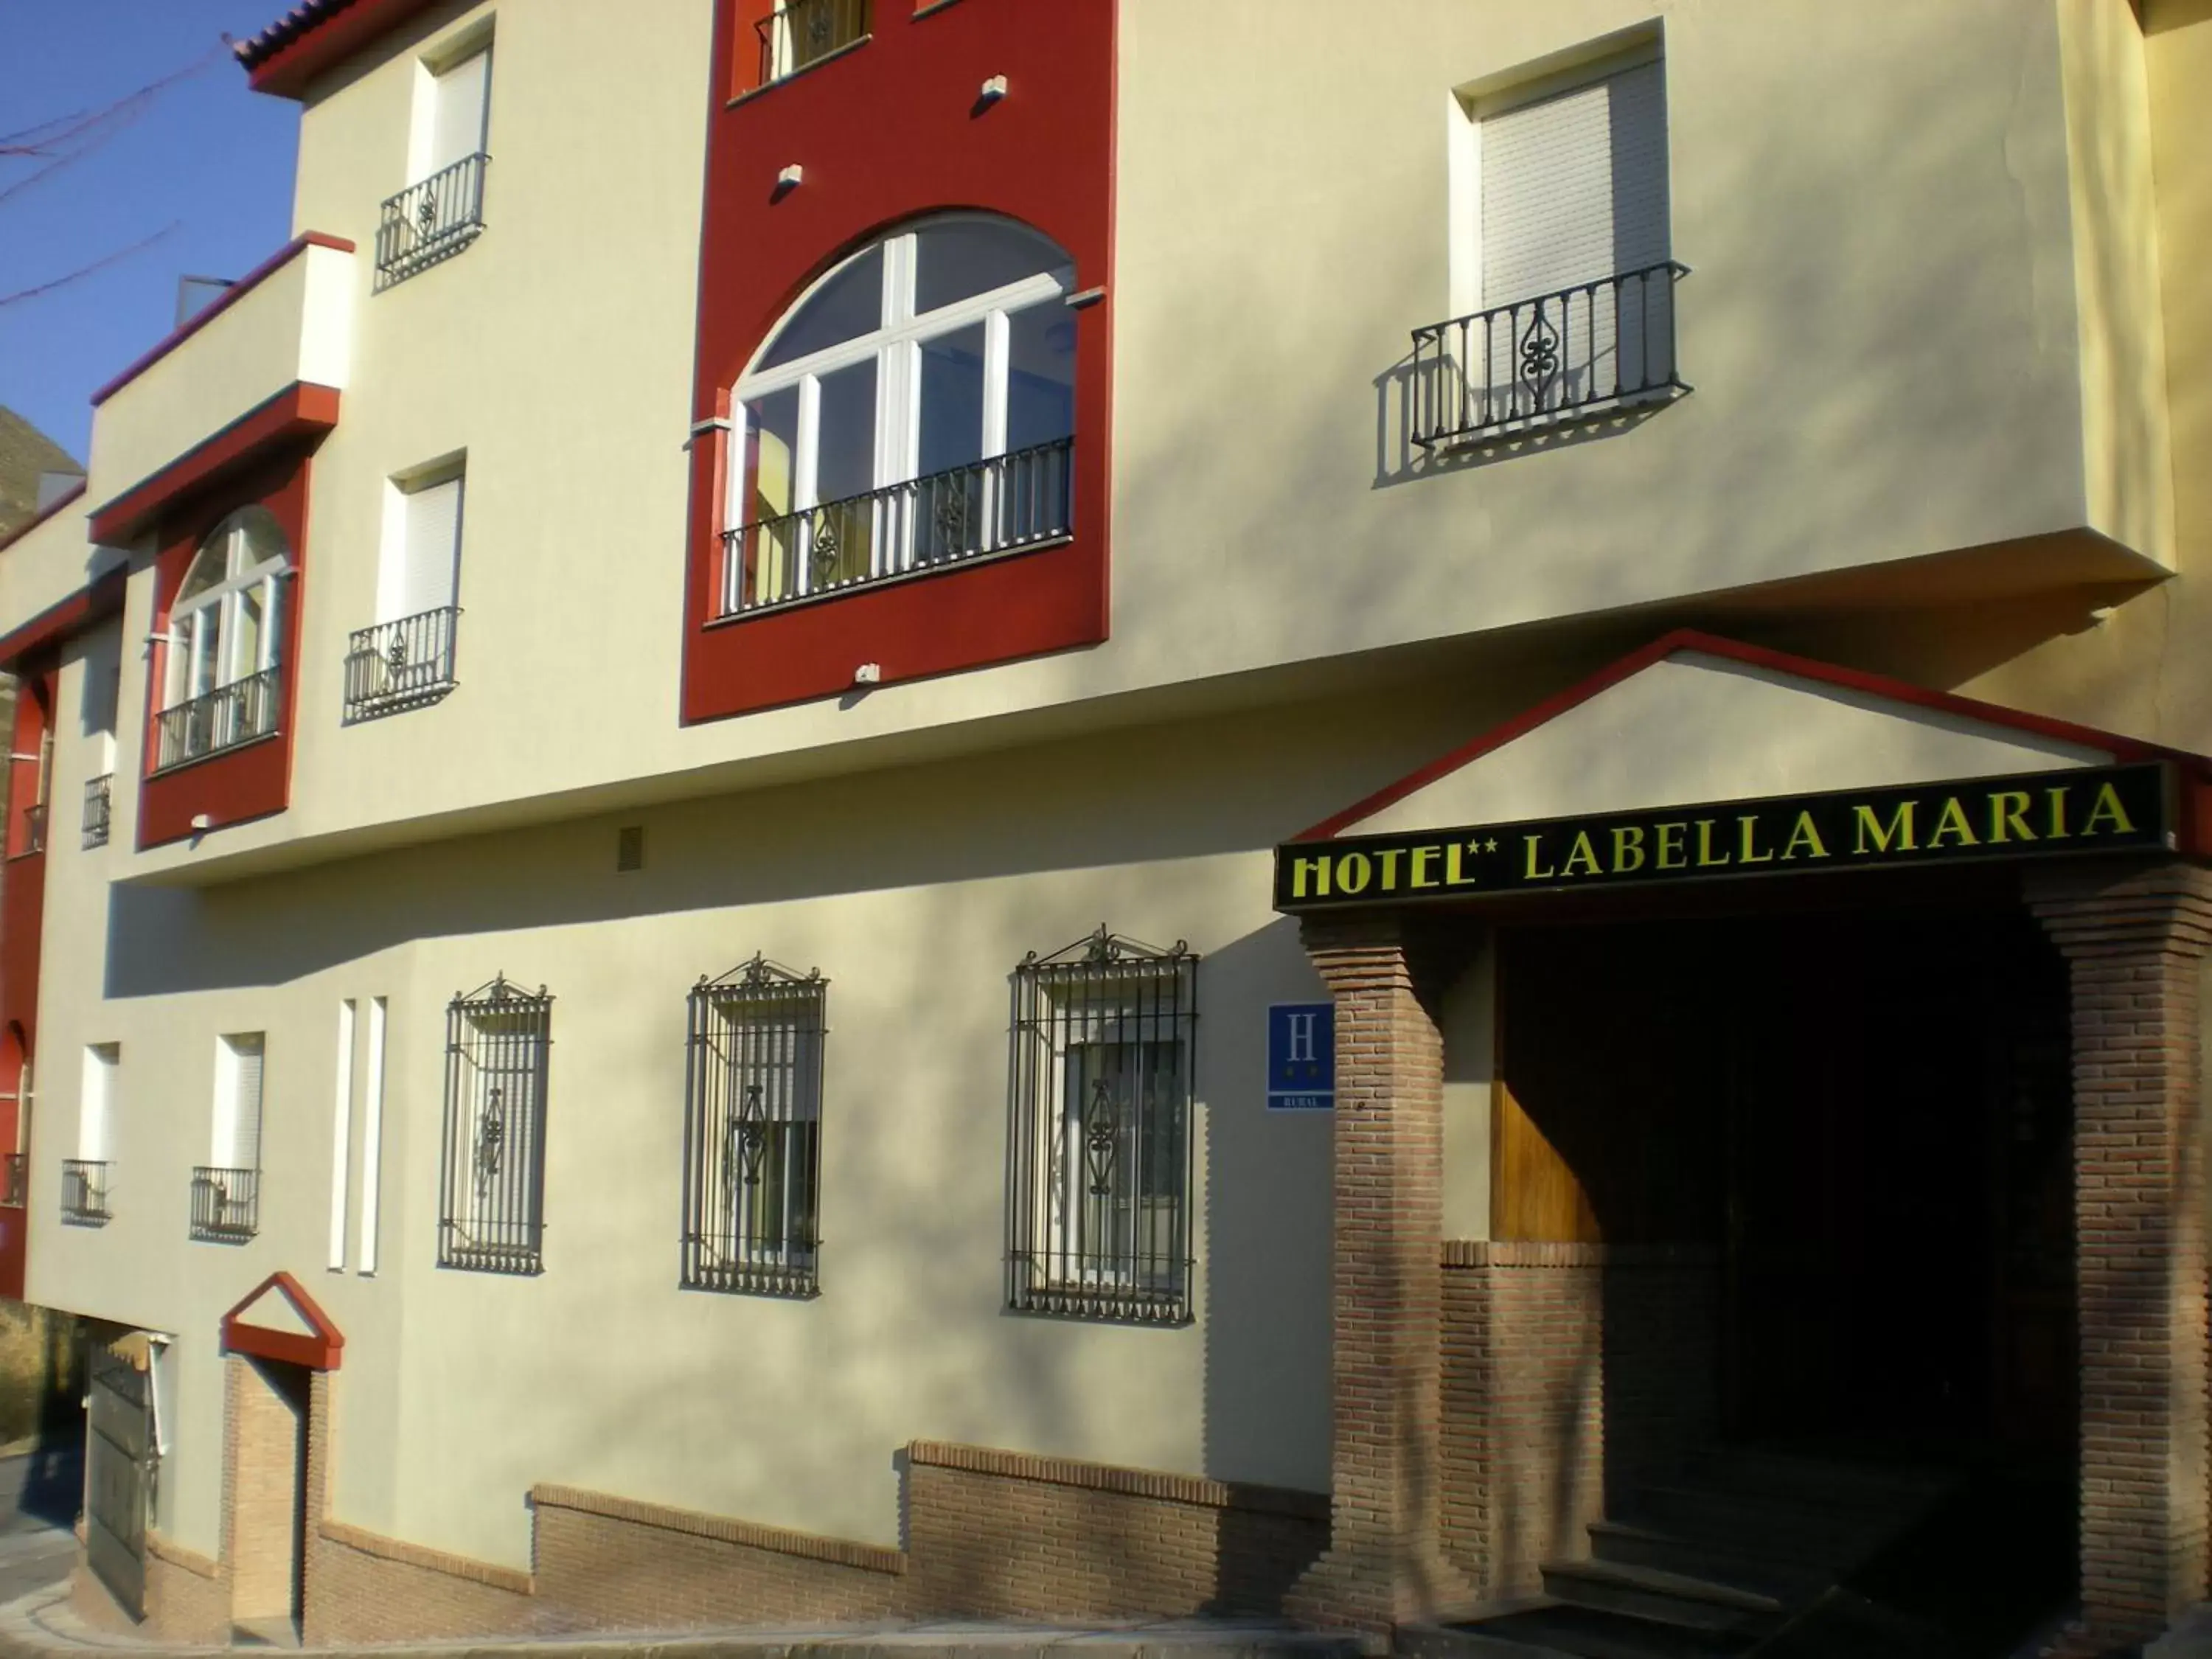 Facade/entrance, Property Building in Labella María